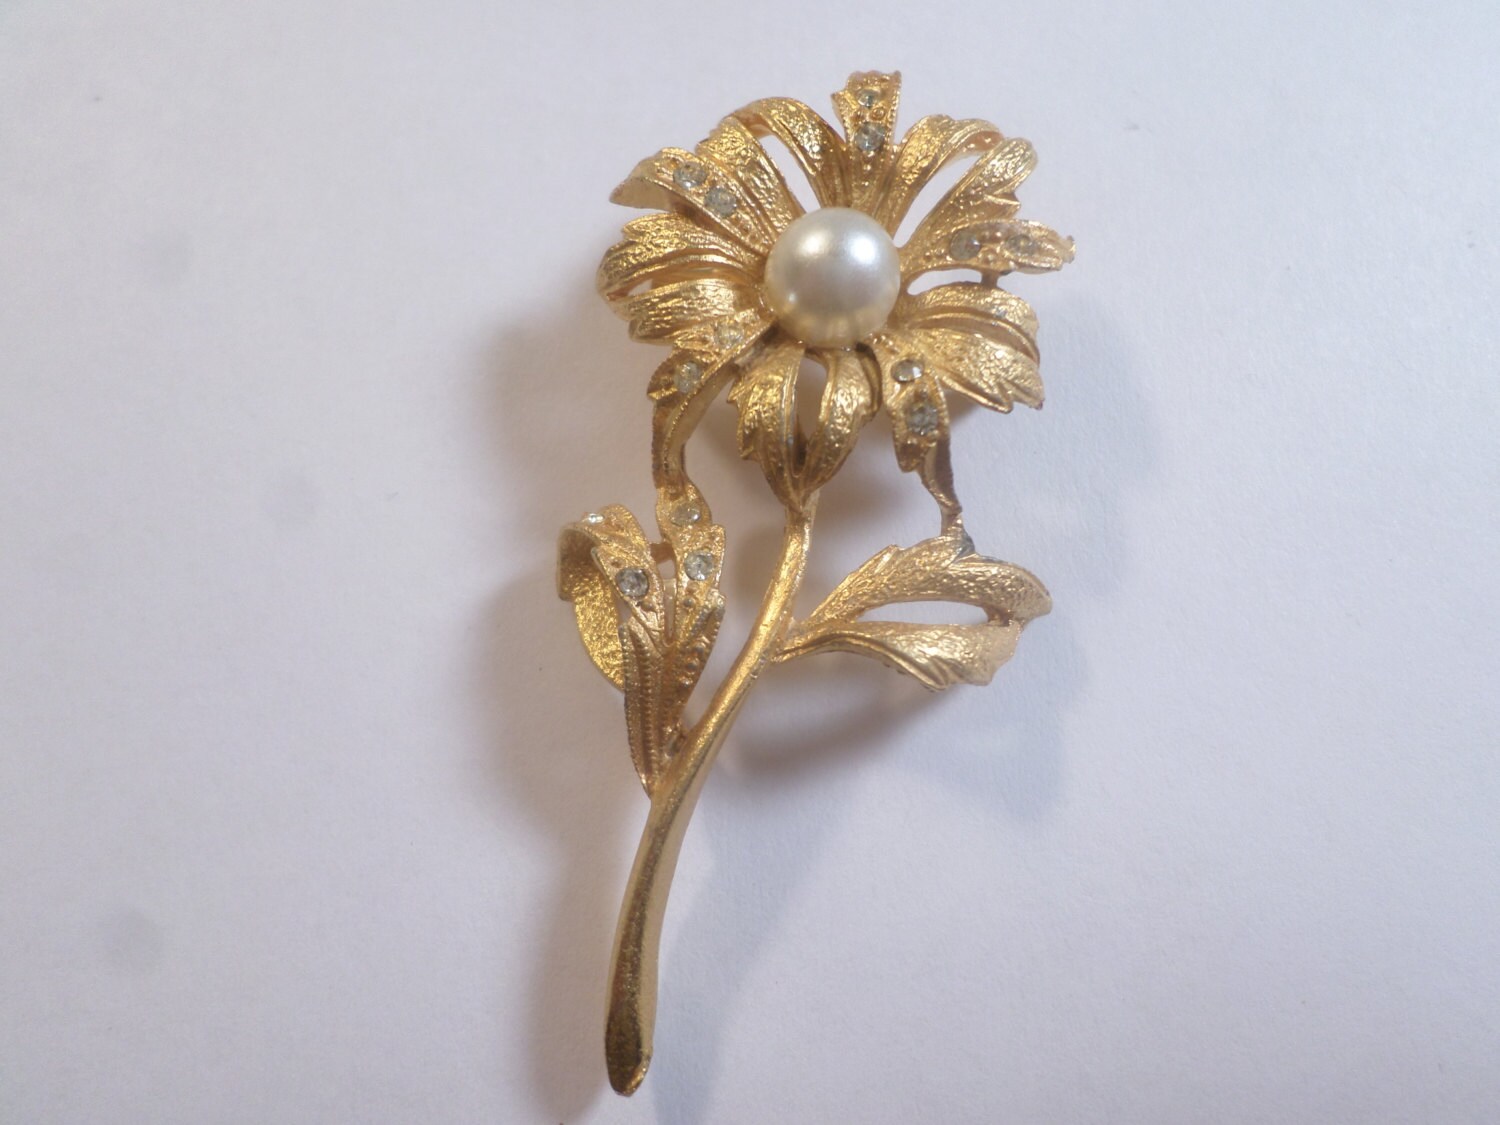 Vintage Gold Tone Flower Brooch With Rhinestones by deniseleesgems